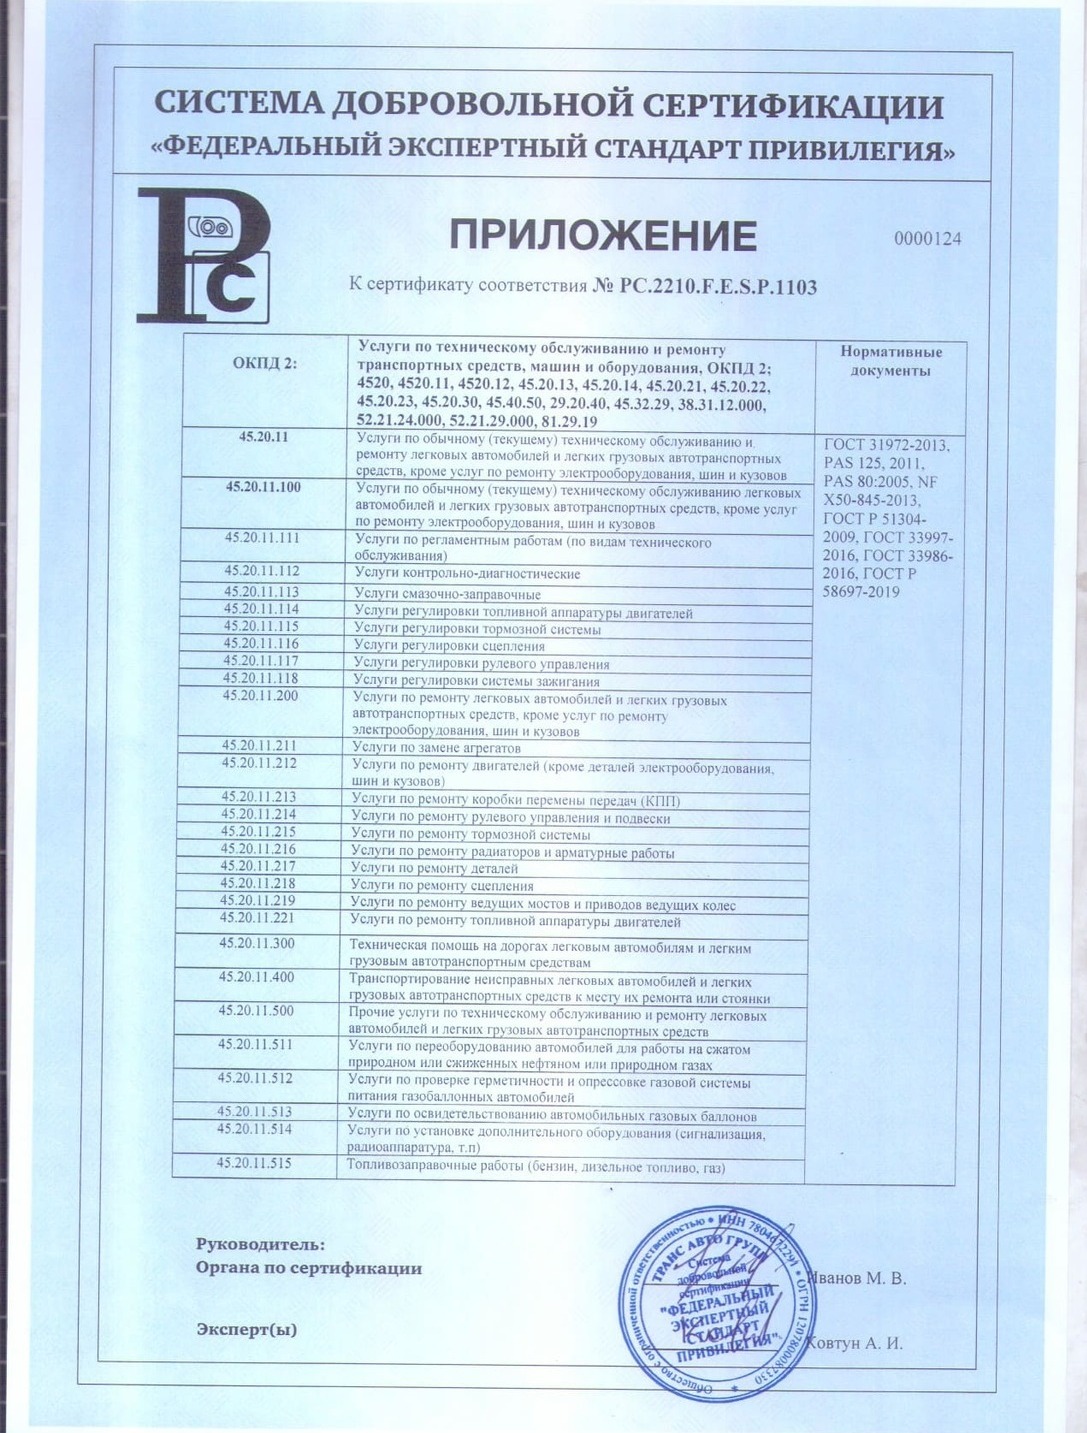 Приложение № 1 к сертификату на ремонт рефов